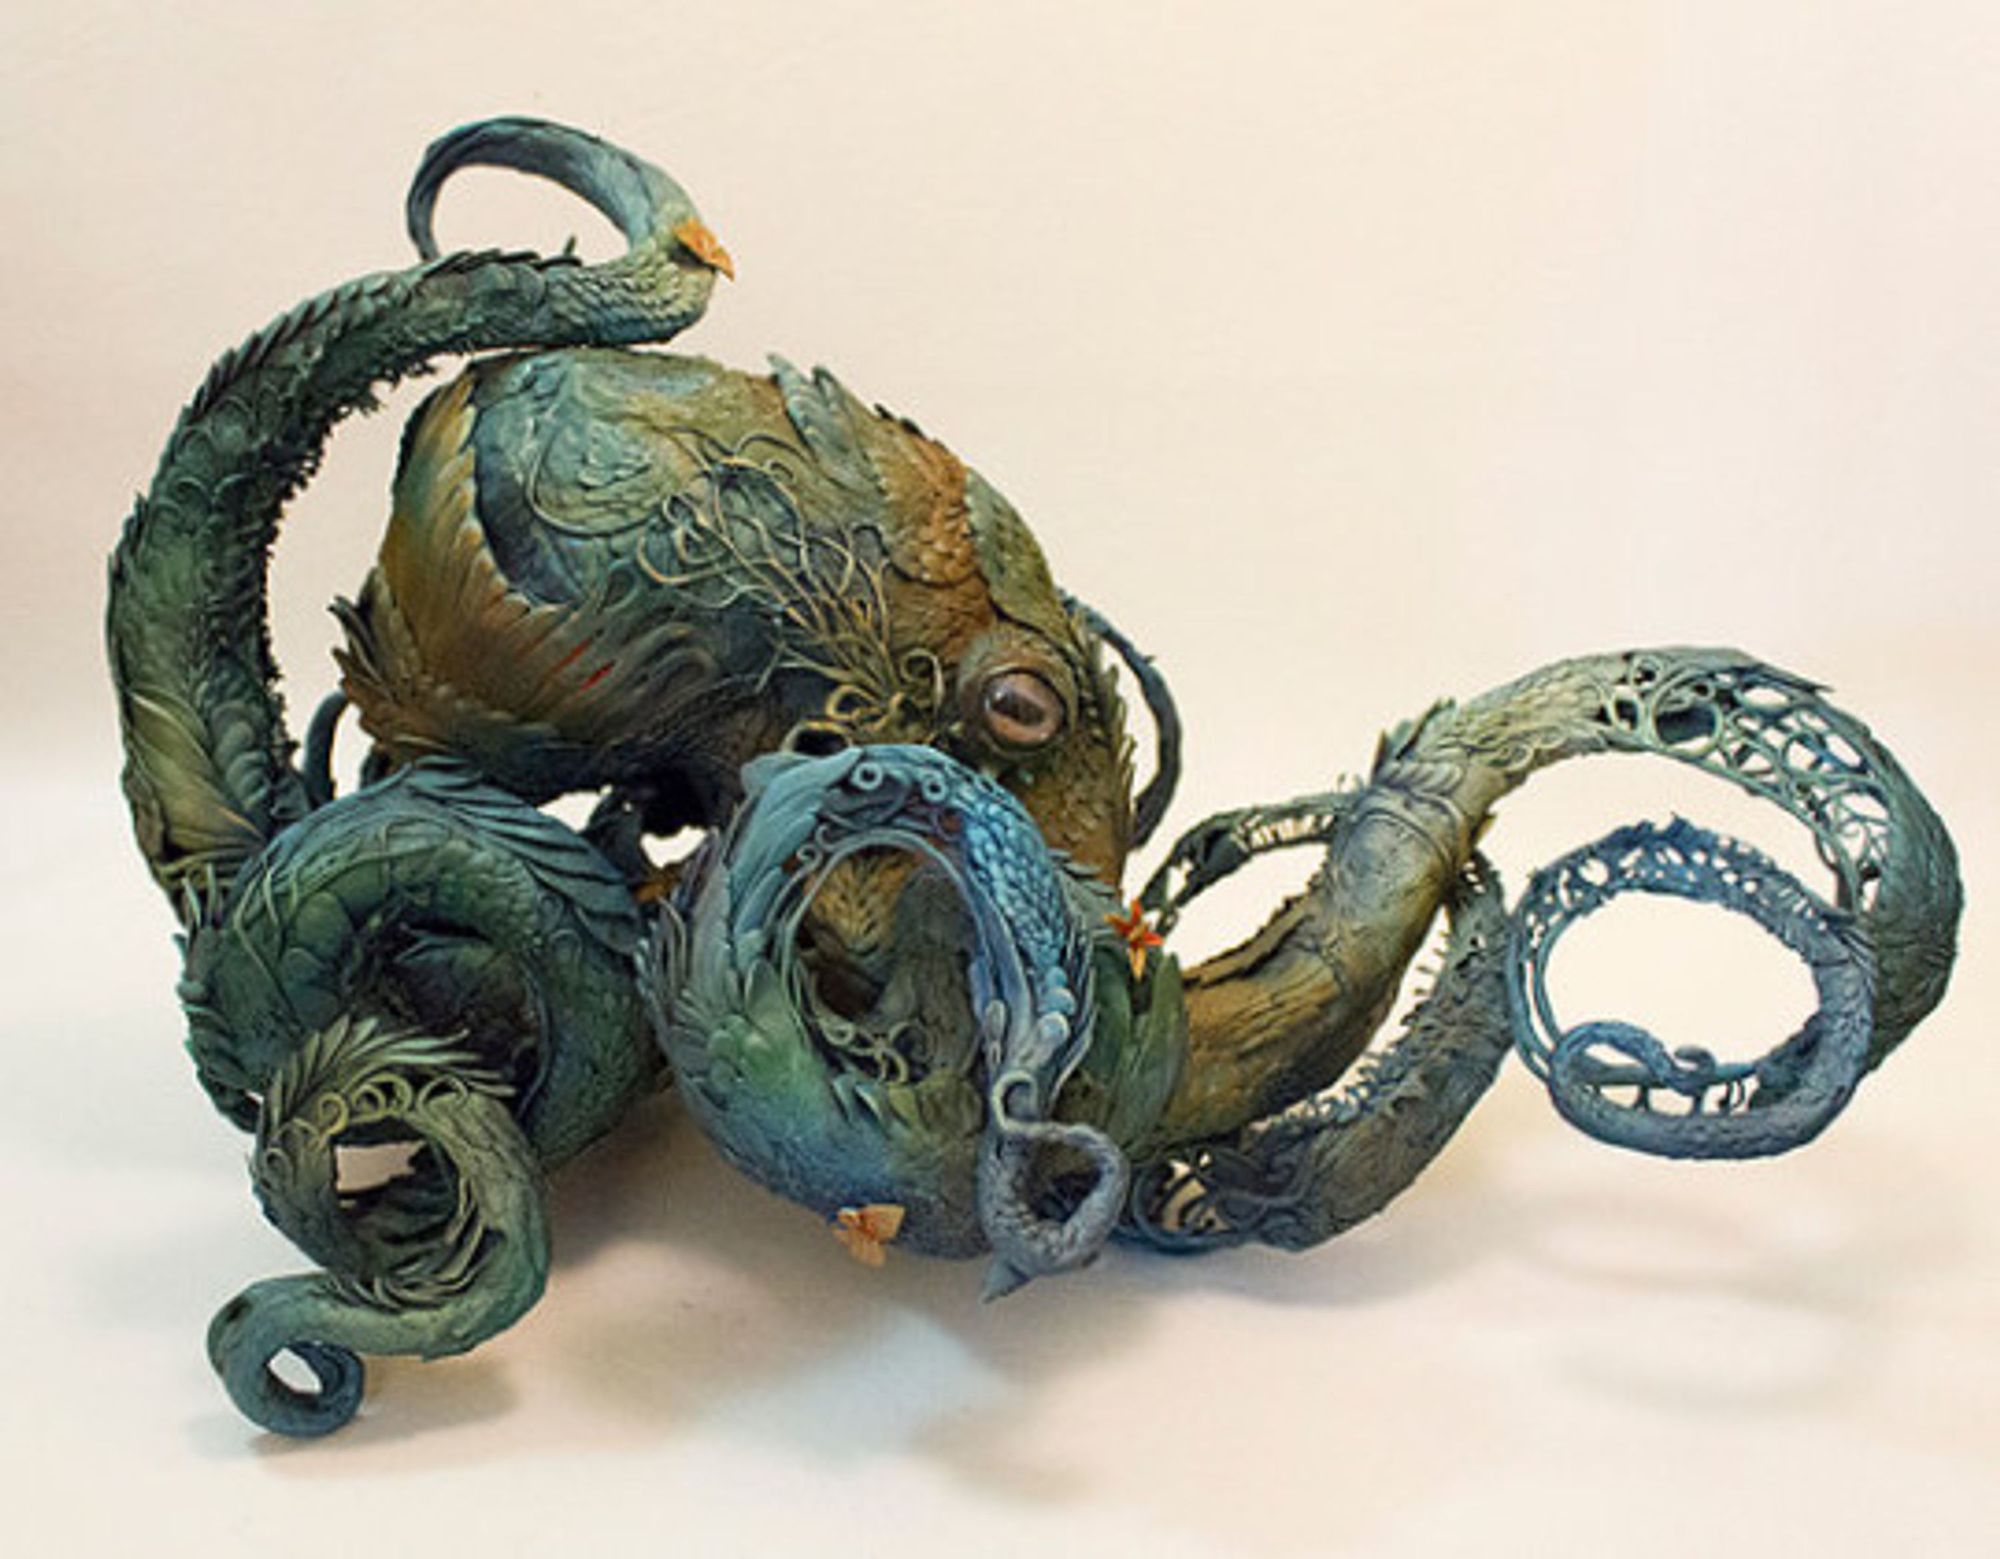 Octopus sculpture by the Canadian artist Ellen Jewett